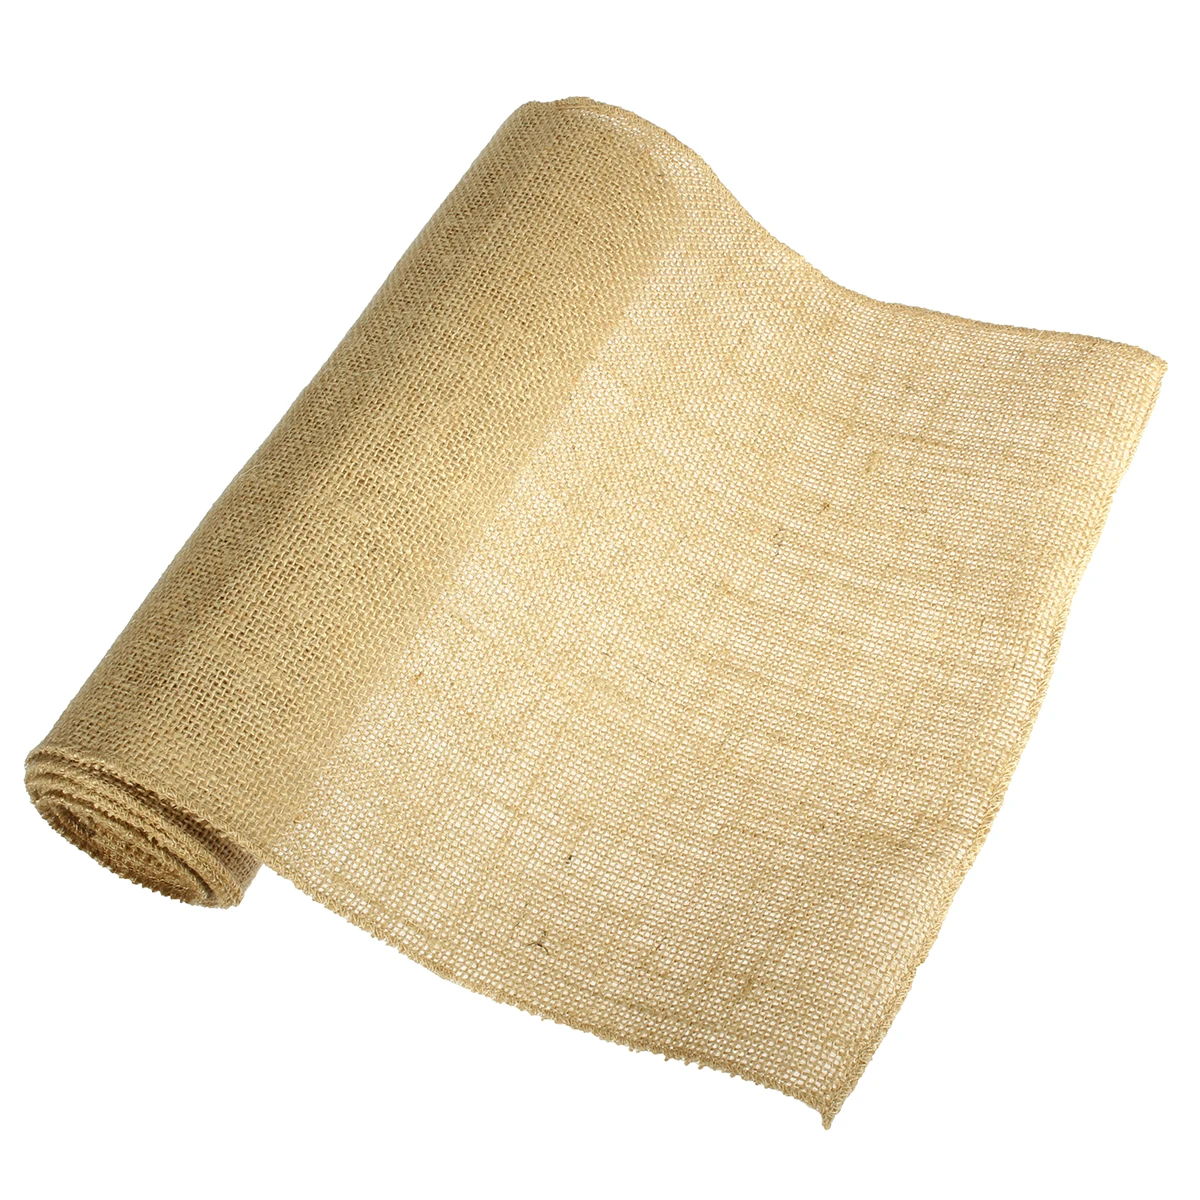 Натуральный Джут Мешковина Hessian рулон ленты для столовых приборов сумки скатерть фон украшения сетка Linnen текстильная ткань